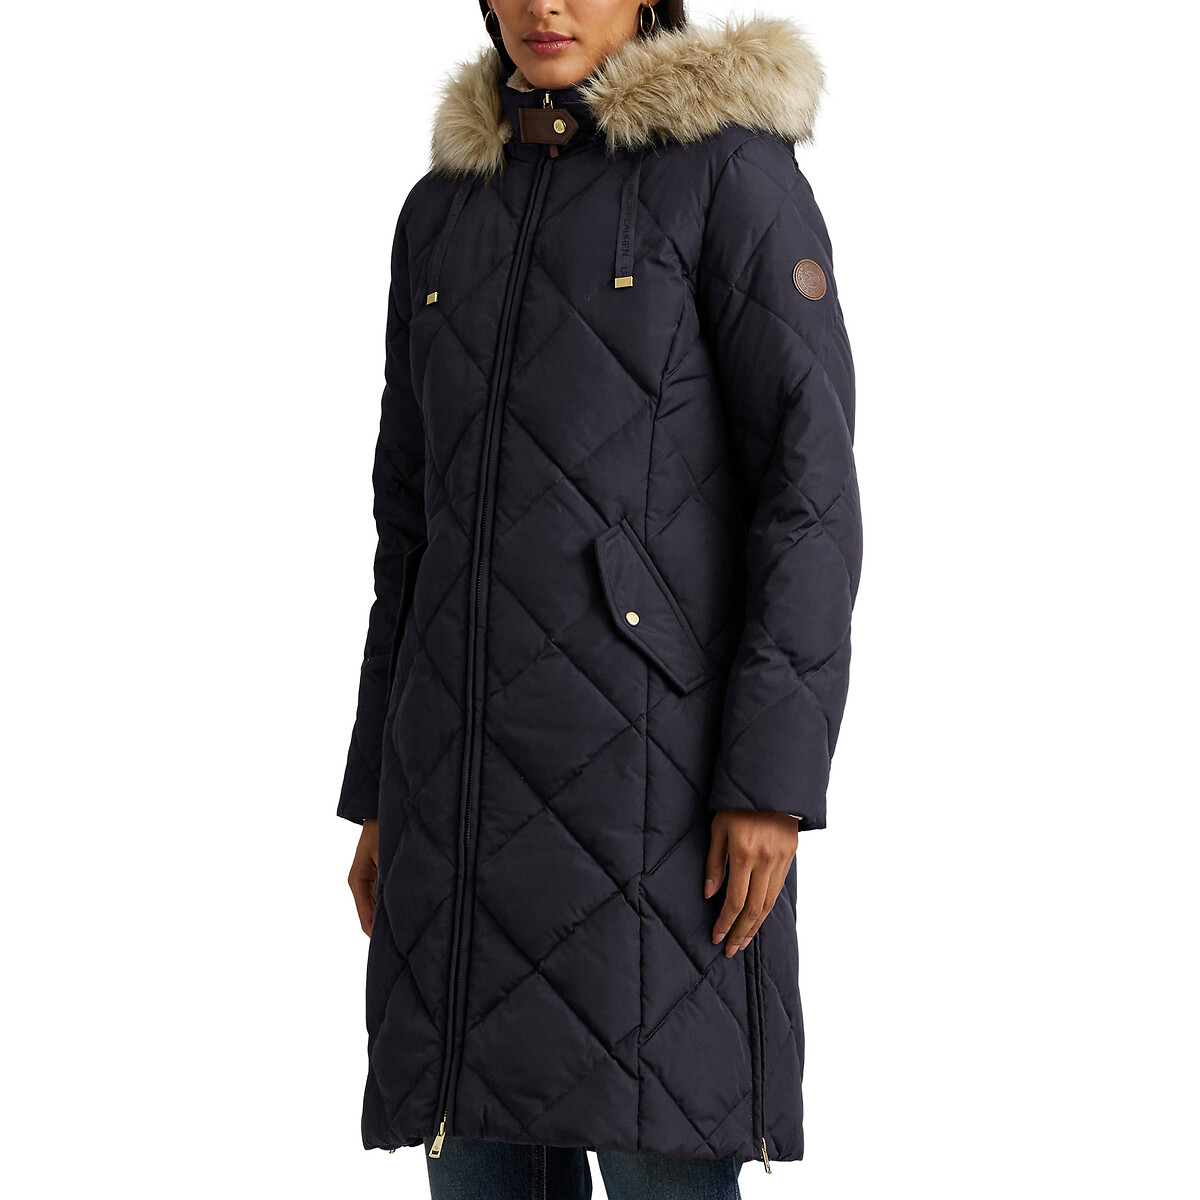 Куртка стеганая средней длины с капюшоном с оторочкой мехом  S синий LaRedoute, размер S